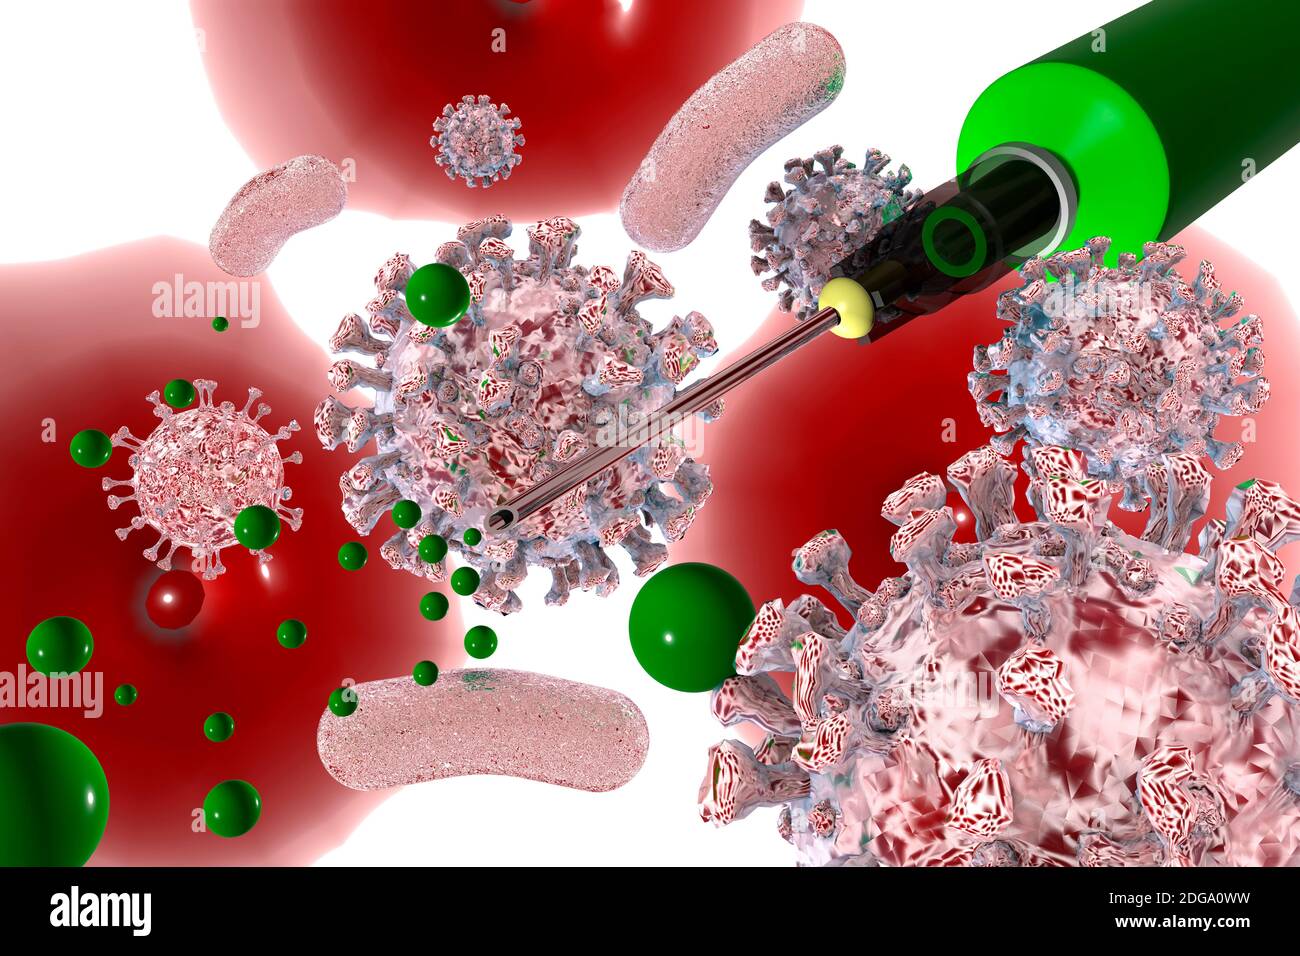 Die Mainzer Firma BioNTech hat einen potenten Impuls gegen das Coronavirus gefunden - Symbolbild: CGI-Visualisierung: Impuls, Coronavirus Covid 19 Stockfoto